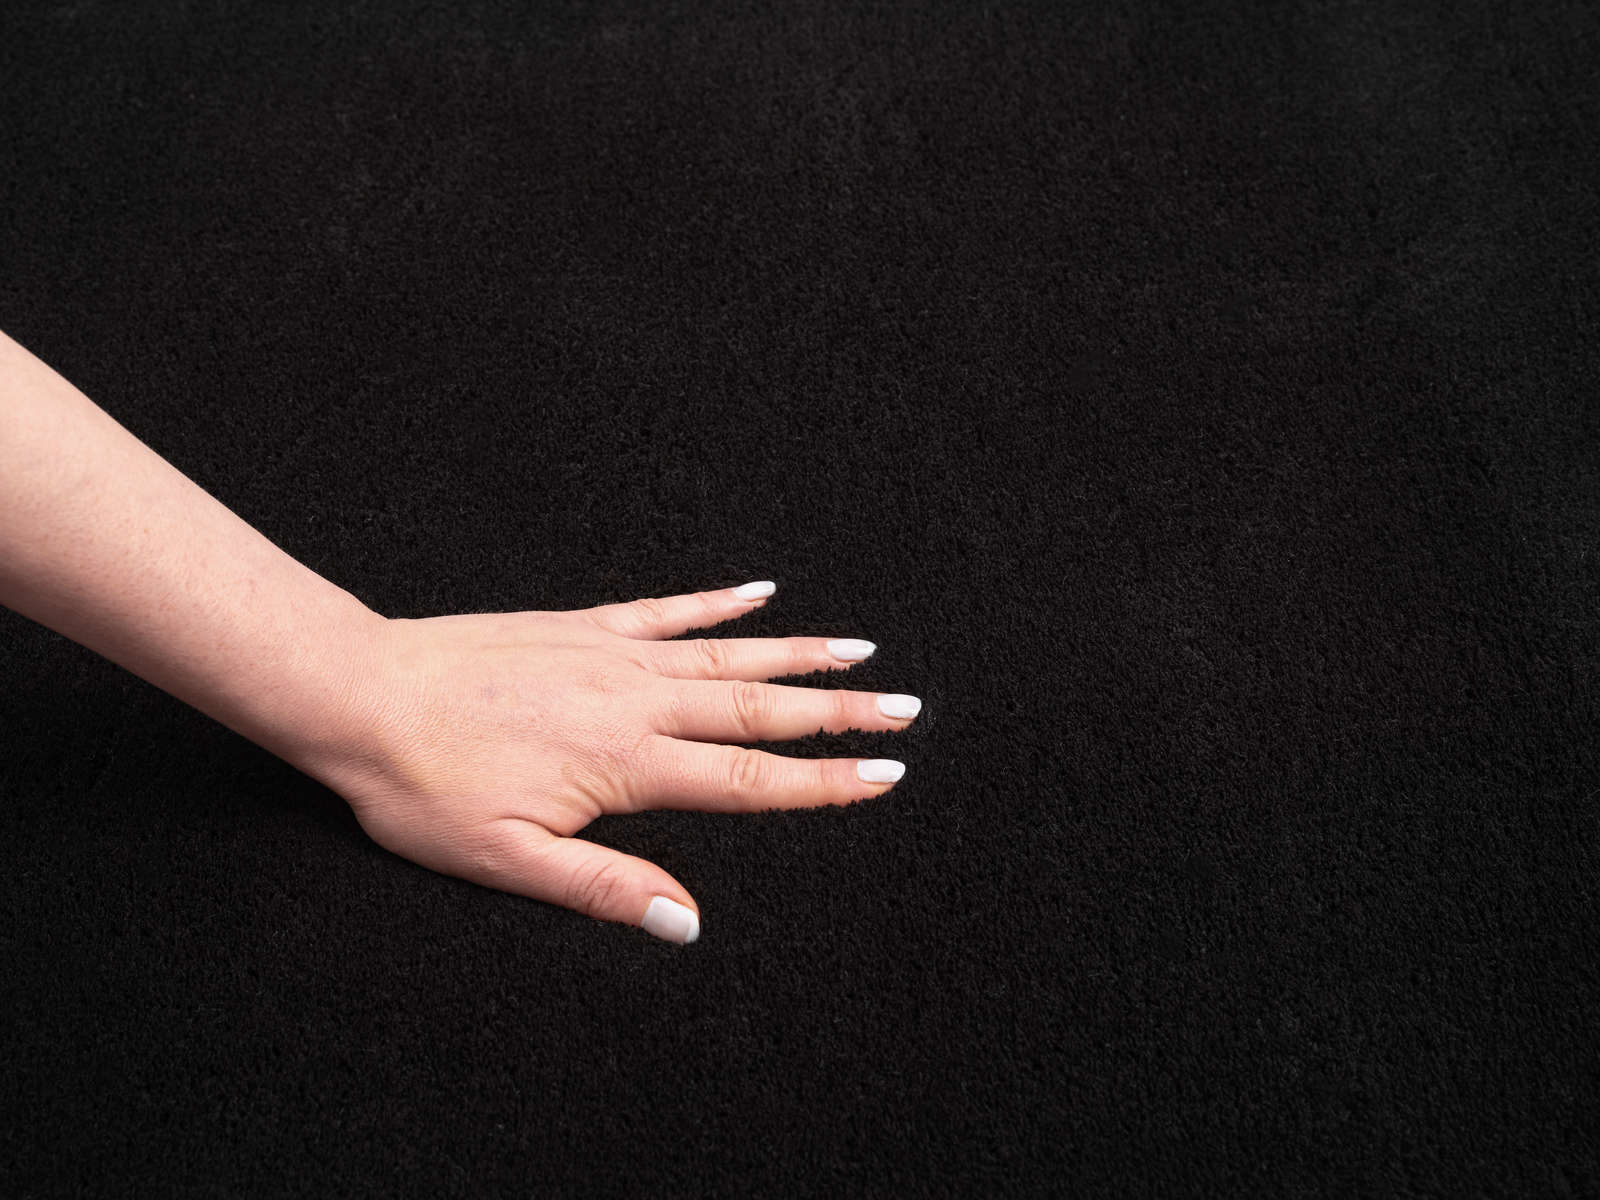             Velvety high pile carpet in black - 110 x 60 cm
        